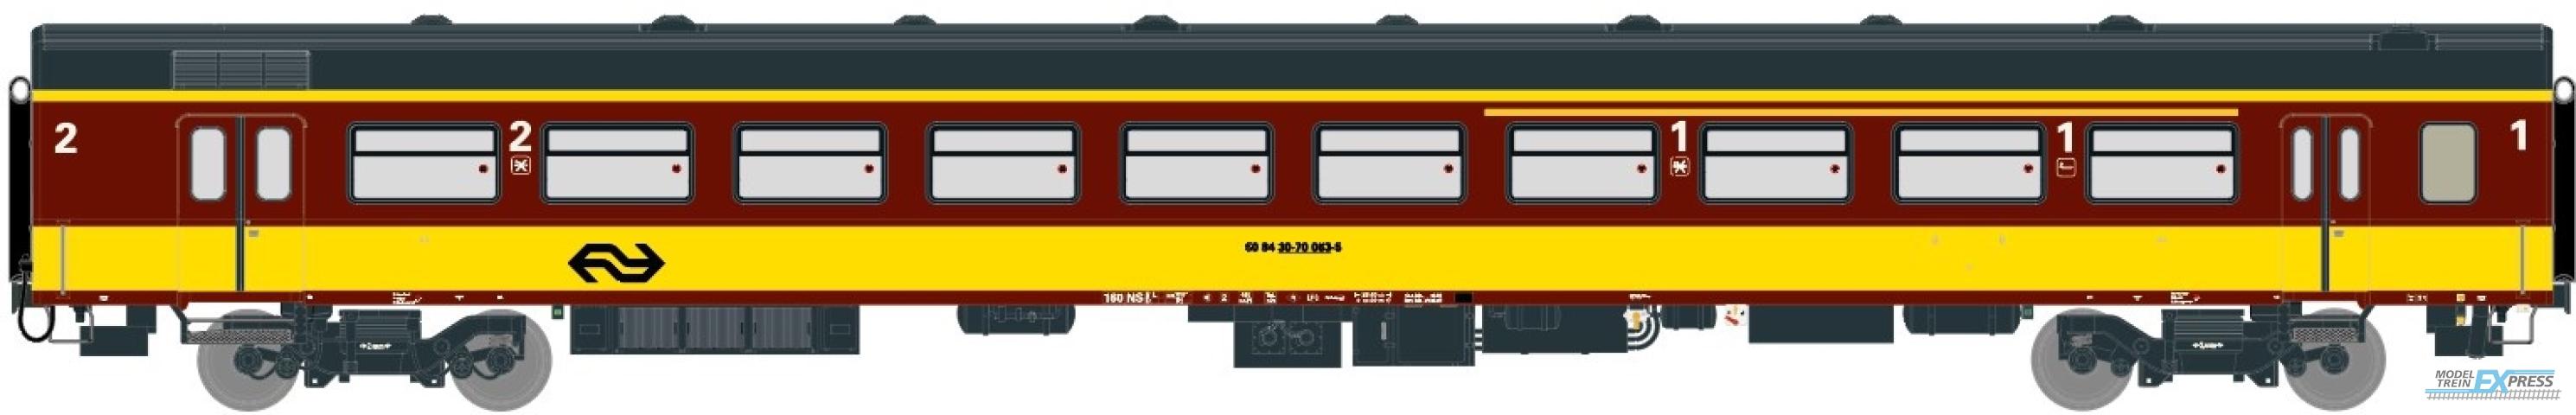 Exact-train 11171 NS ICR (Originalversion) für den Beneluxzug nach Belgien Reisezugwagen A4B6 ( Farbe Gelb / Rot) mit Beleuchtung und Figuren, Ep. IV